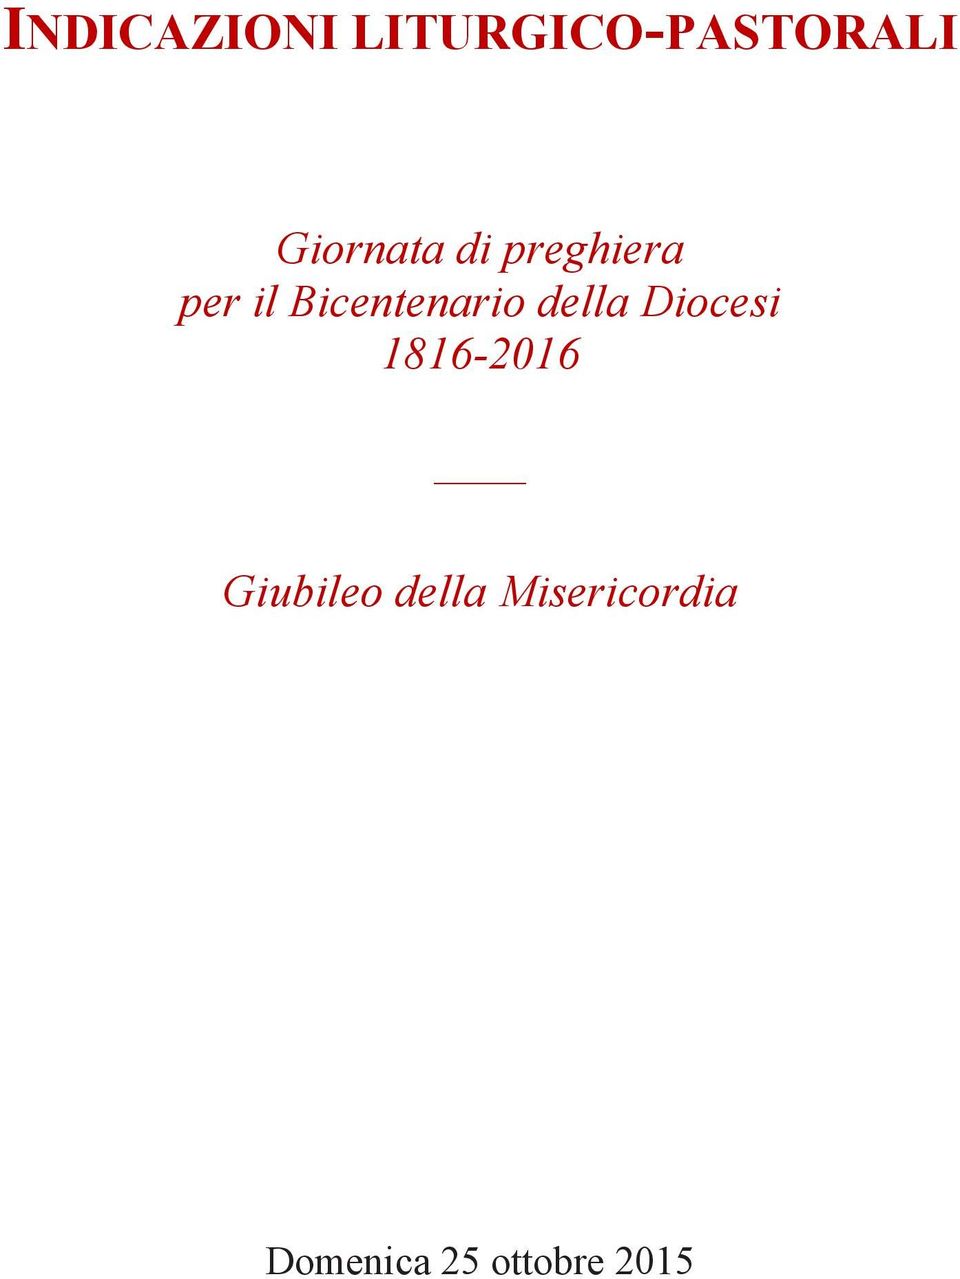 Bicentenario della Diocesi 1816-2016